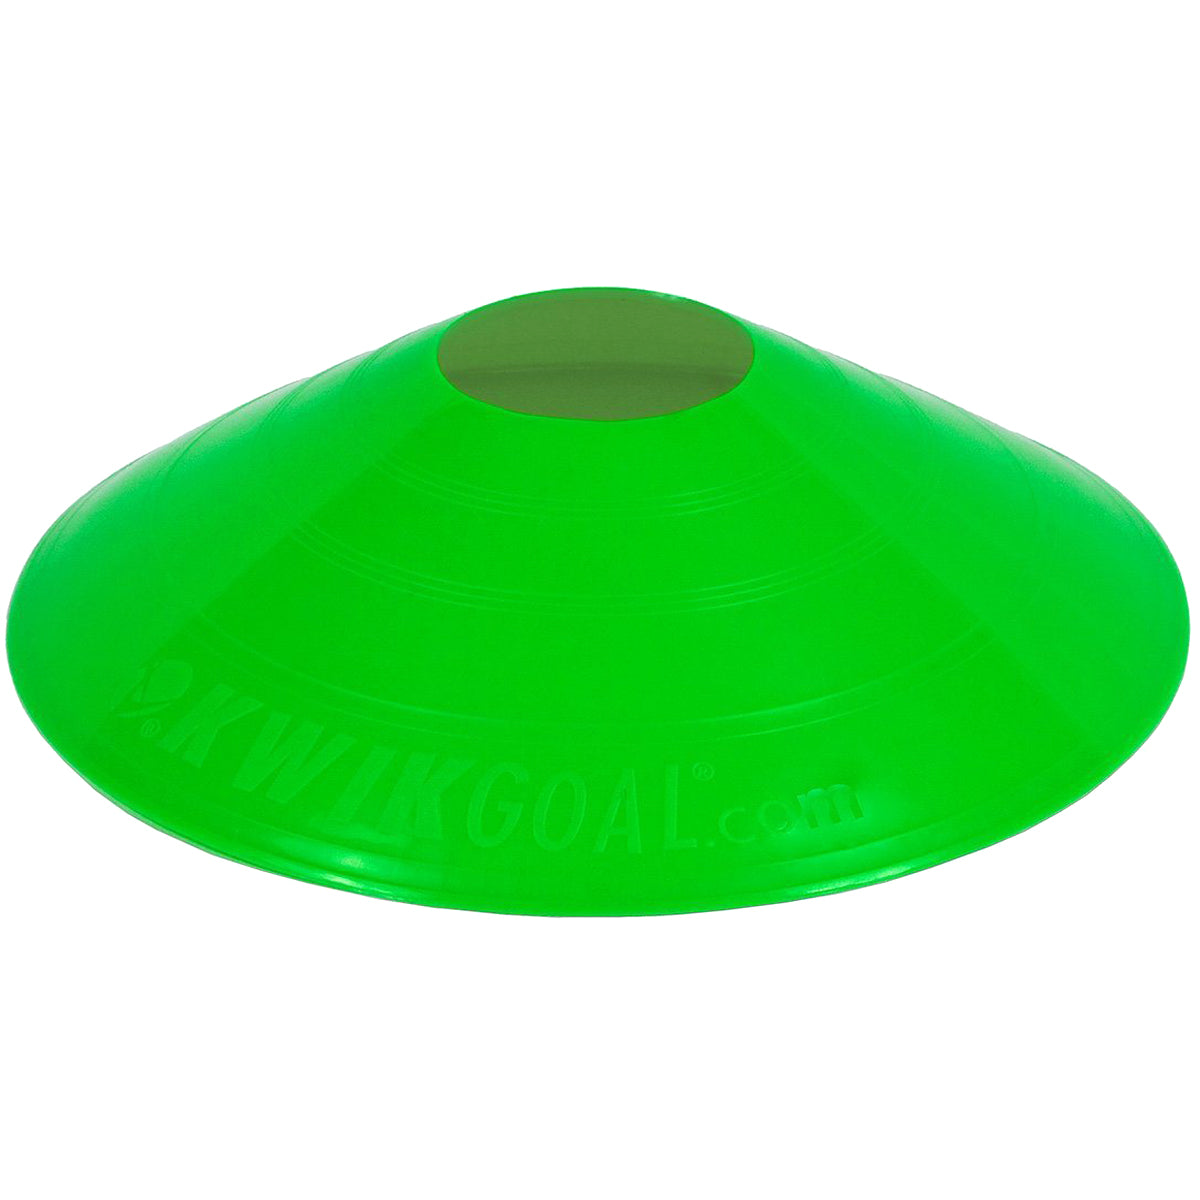 Kwikgoal Small Disc Cones Soccer Coaching Equipment | 6A10 Field equipment Kwikgoal Green 